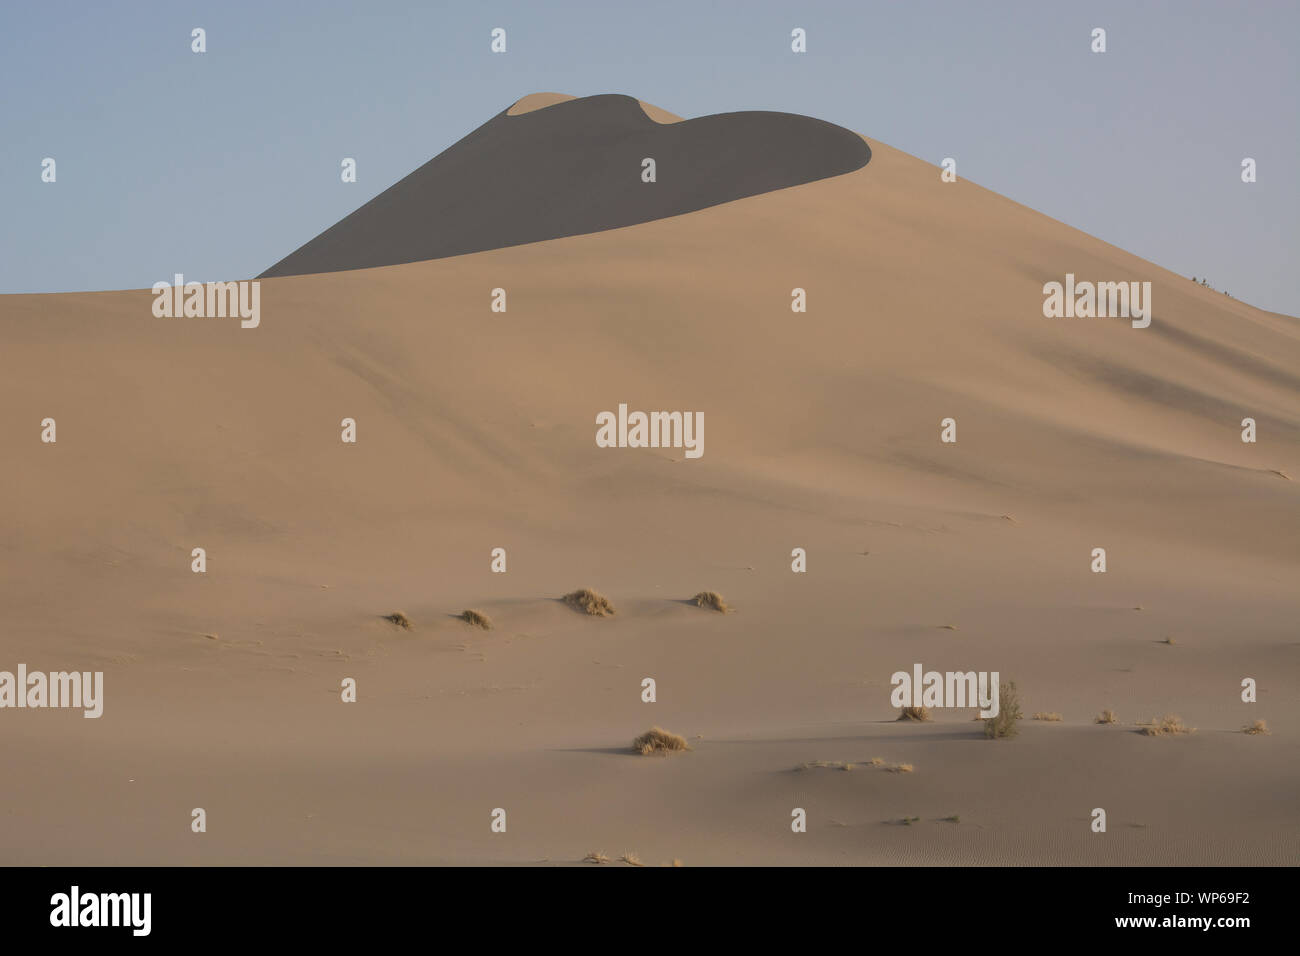 Le Chant des dunes géantes au géoparc de dunes de sable, Nanjing, Chine Banque D'Images